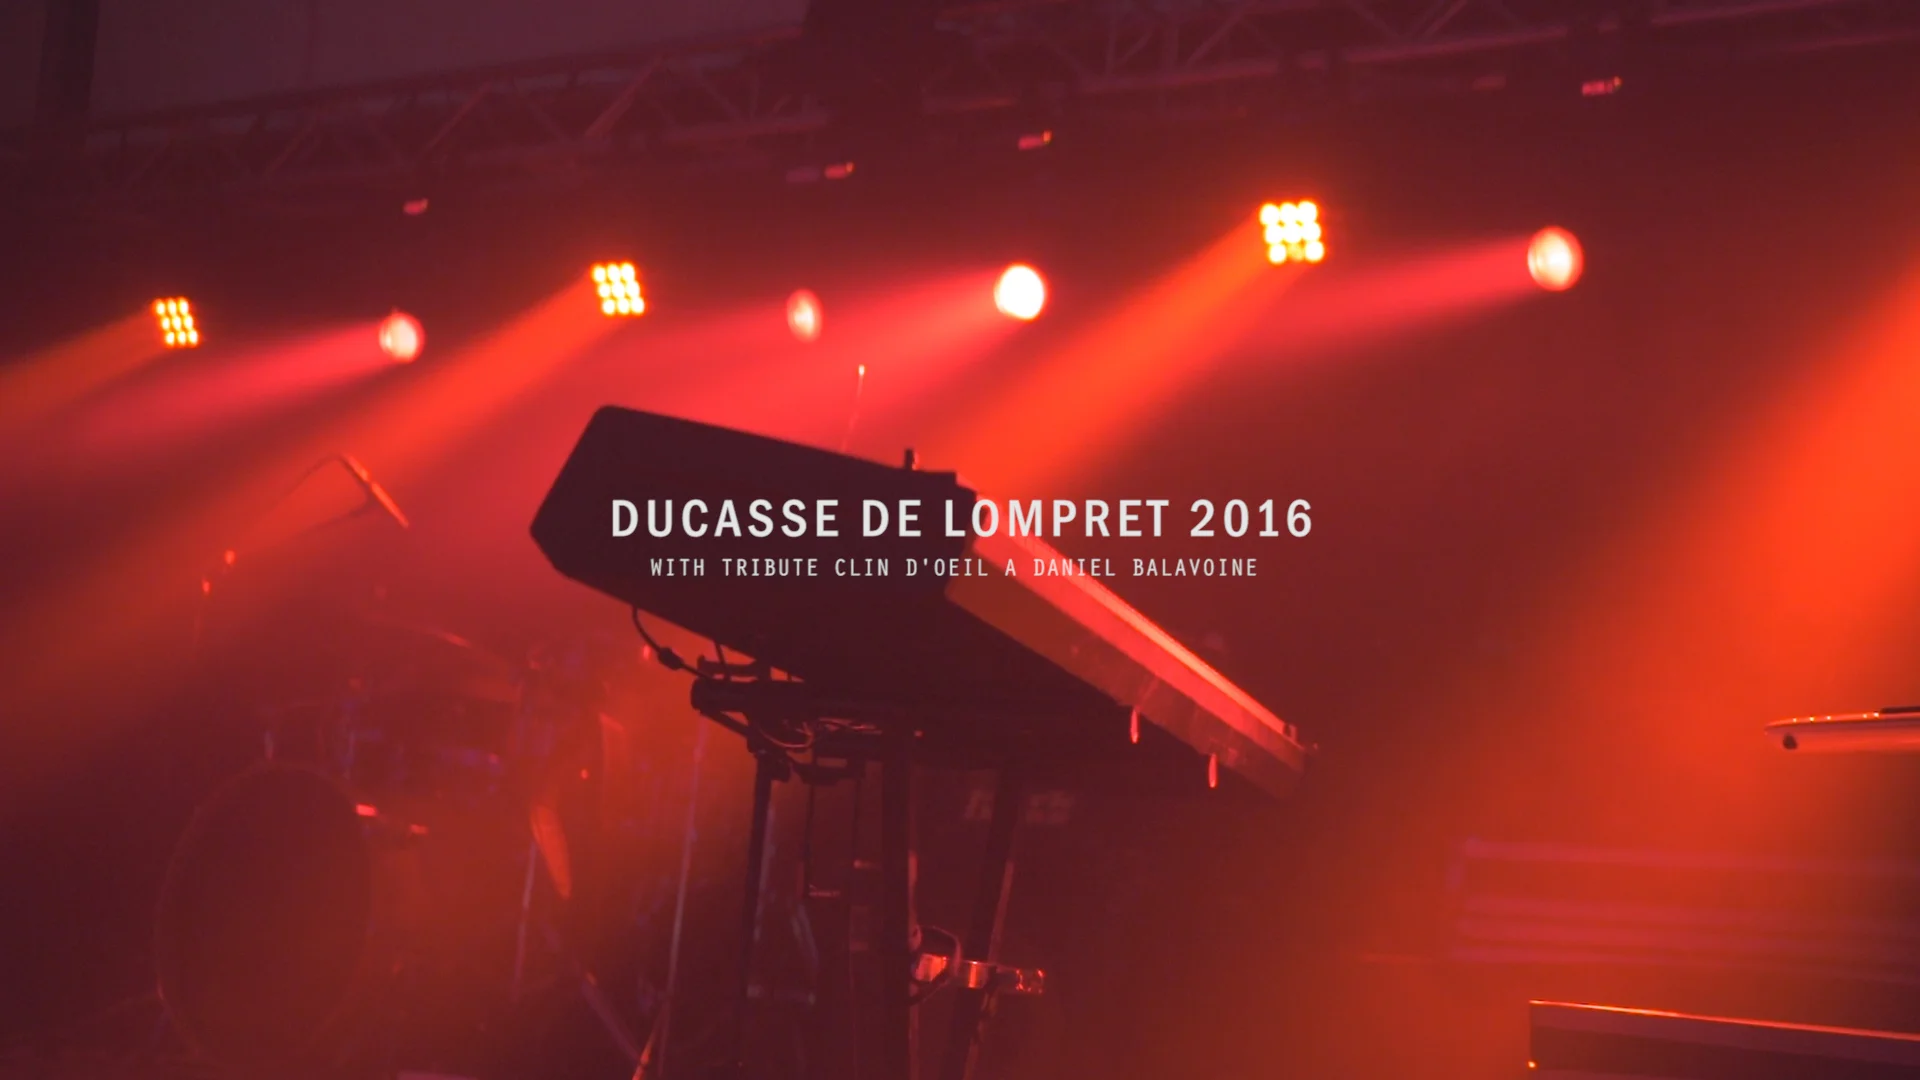 Concert Balavoine (Cover) - Ducasse de Lompret 2016 on Vimeo